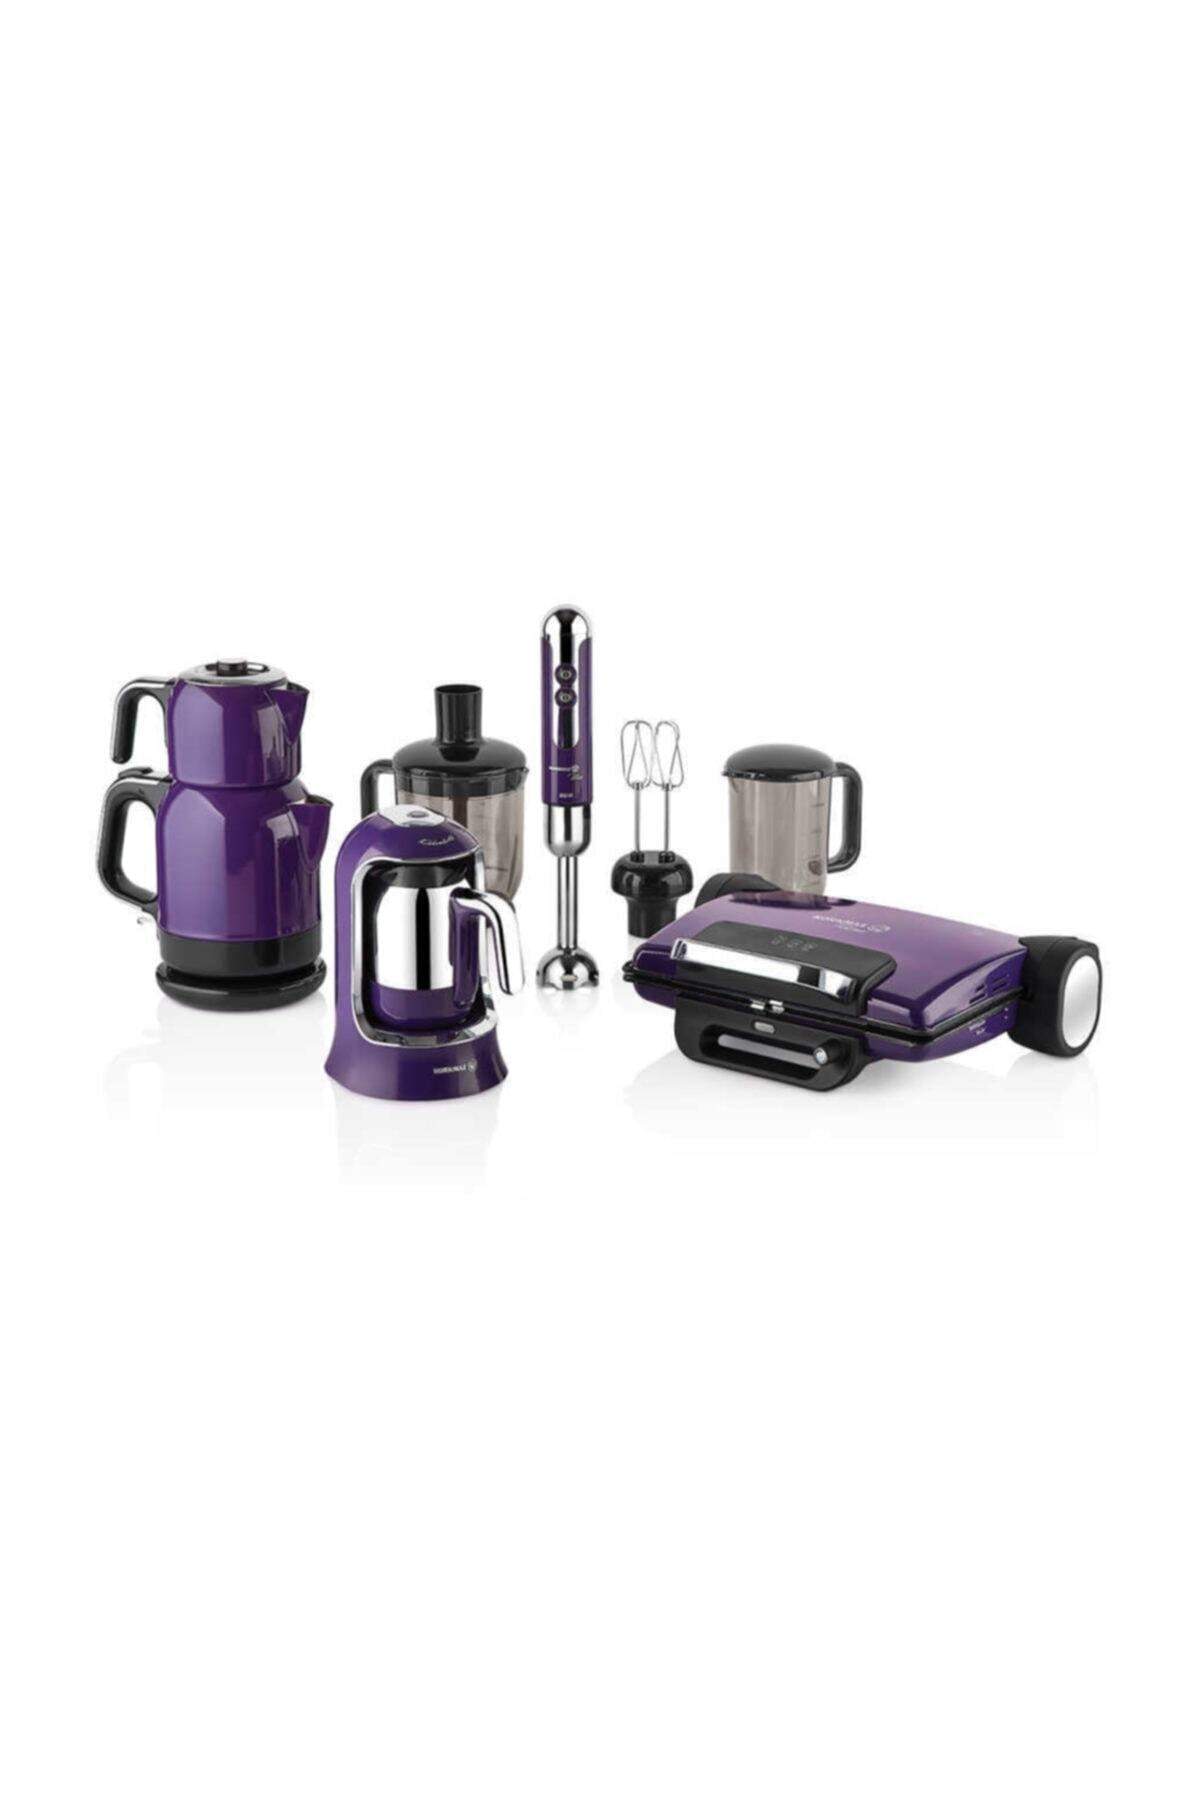 KORKMAZ A1814 Elektro Set Kahve, Çay, Tost Makinesi Ve Blender